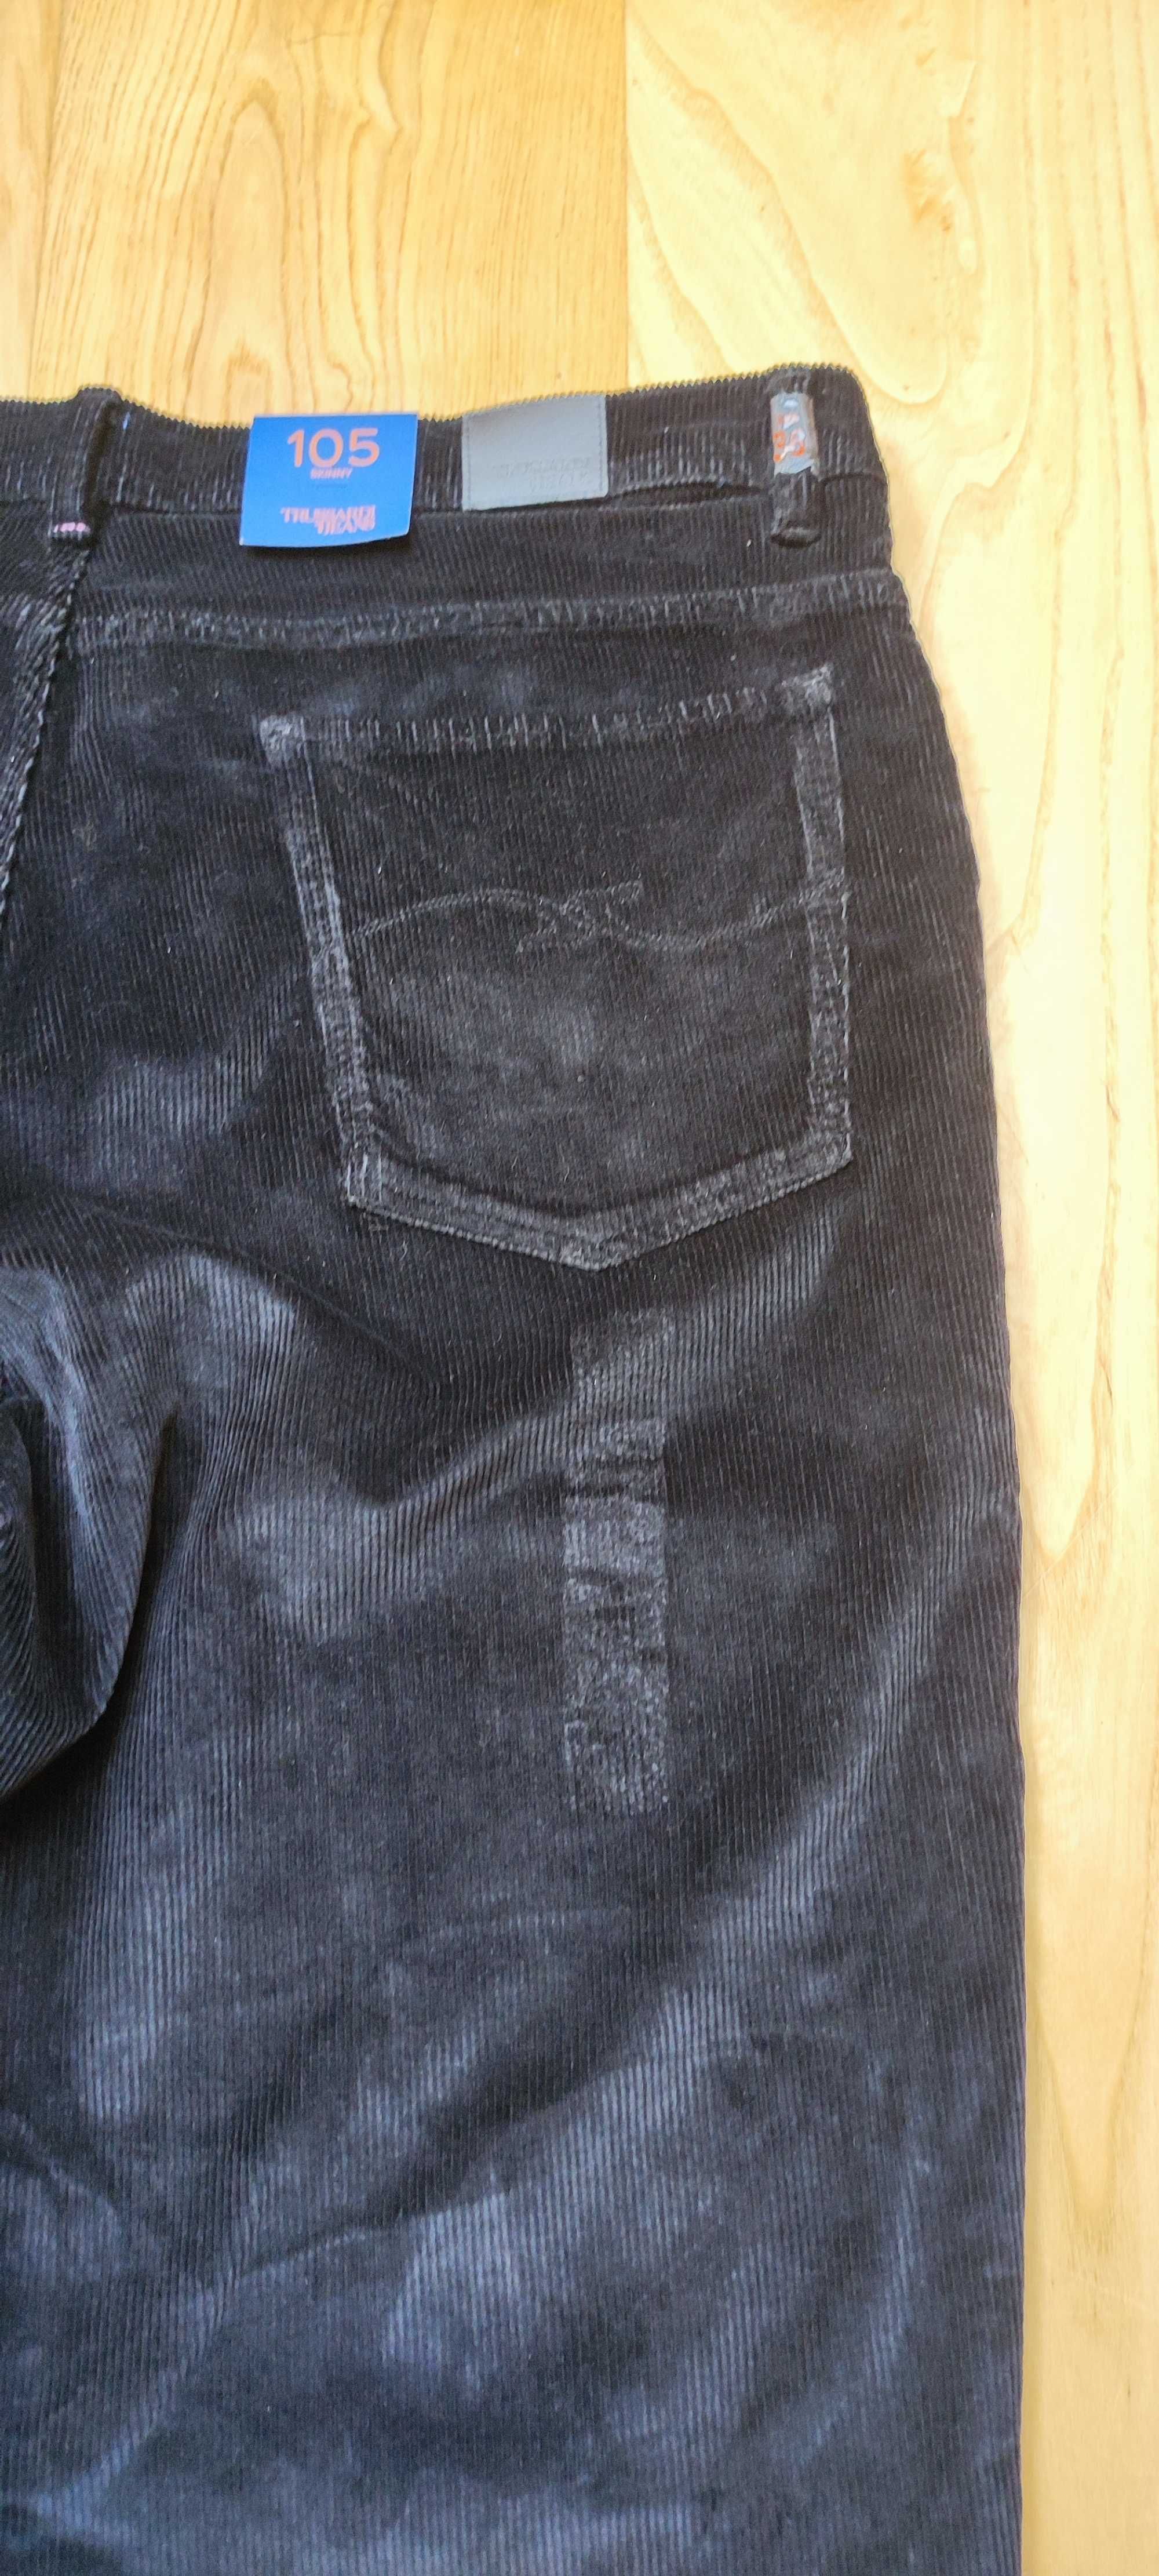 spodnie sztruksowe czarne męskie Trussardi Jeans, roz. 180/86a